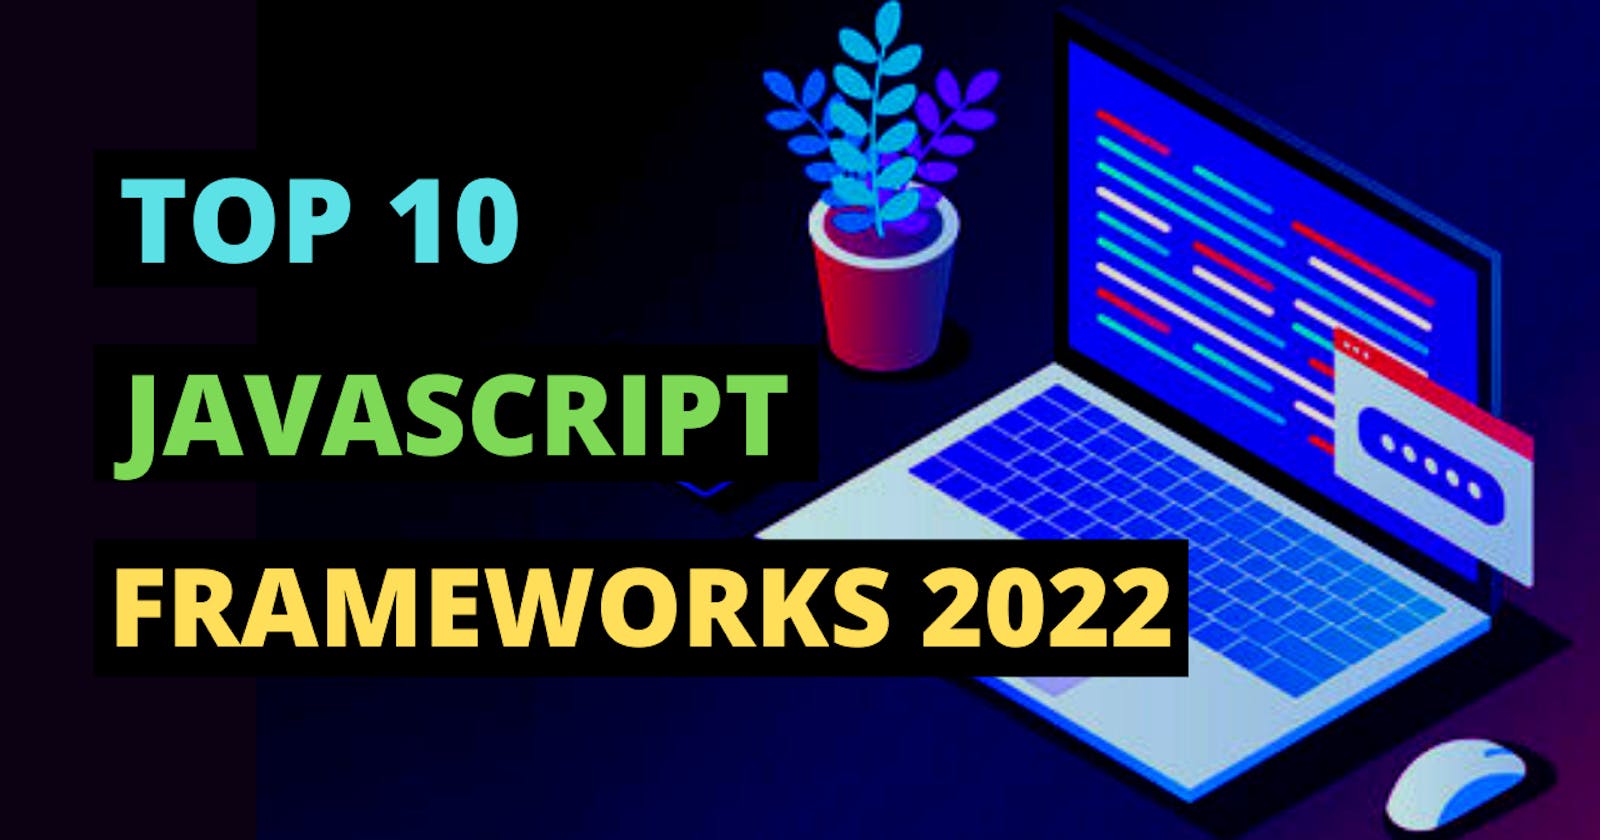 Top 10 Most Popular JavaScript Frameworks for 2022